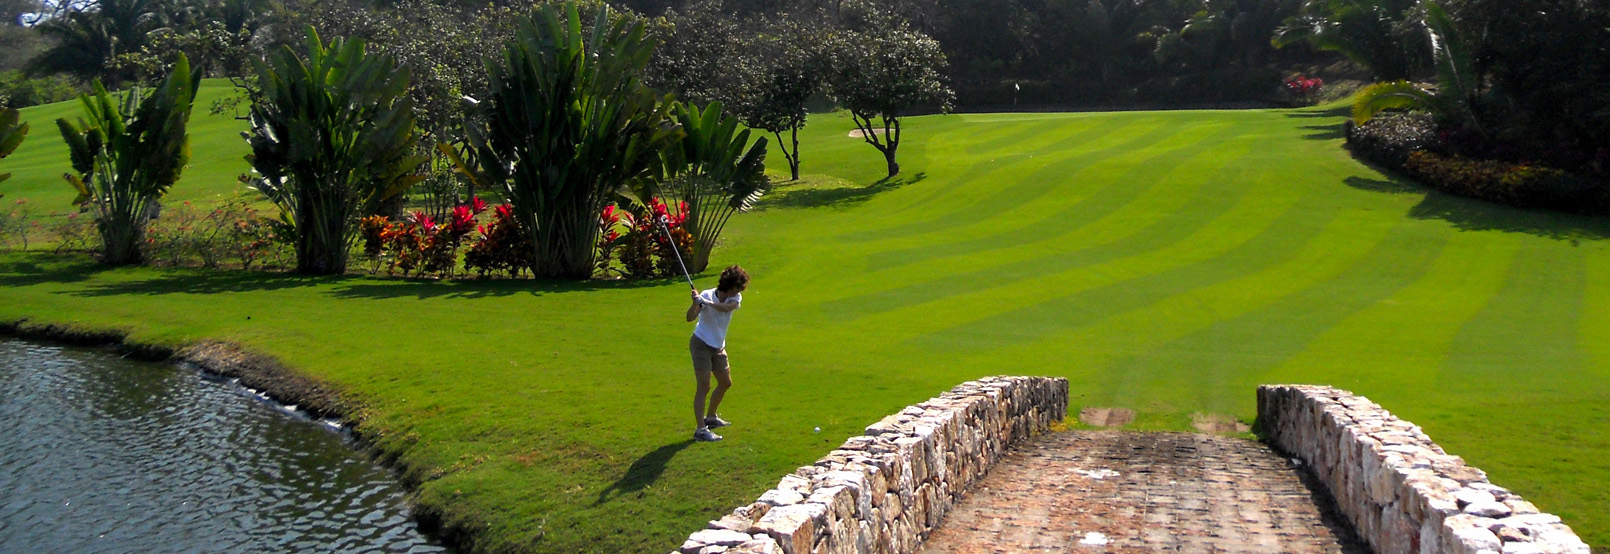 Las Huertas Golf Club